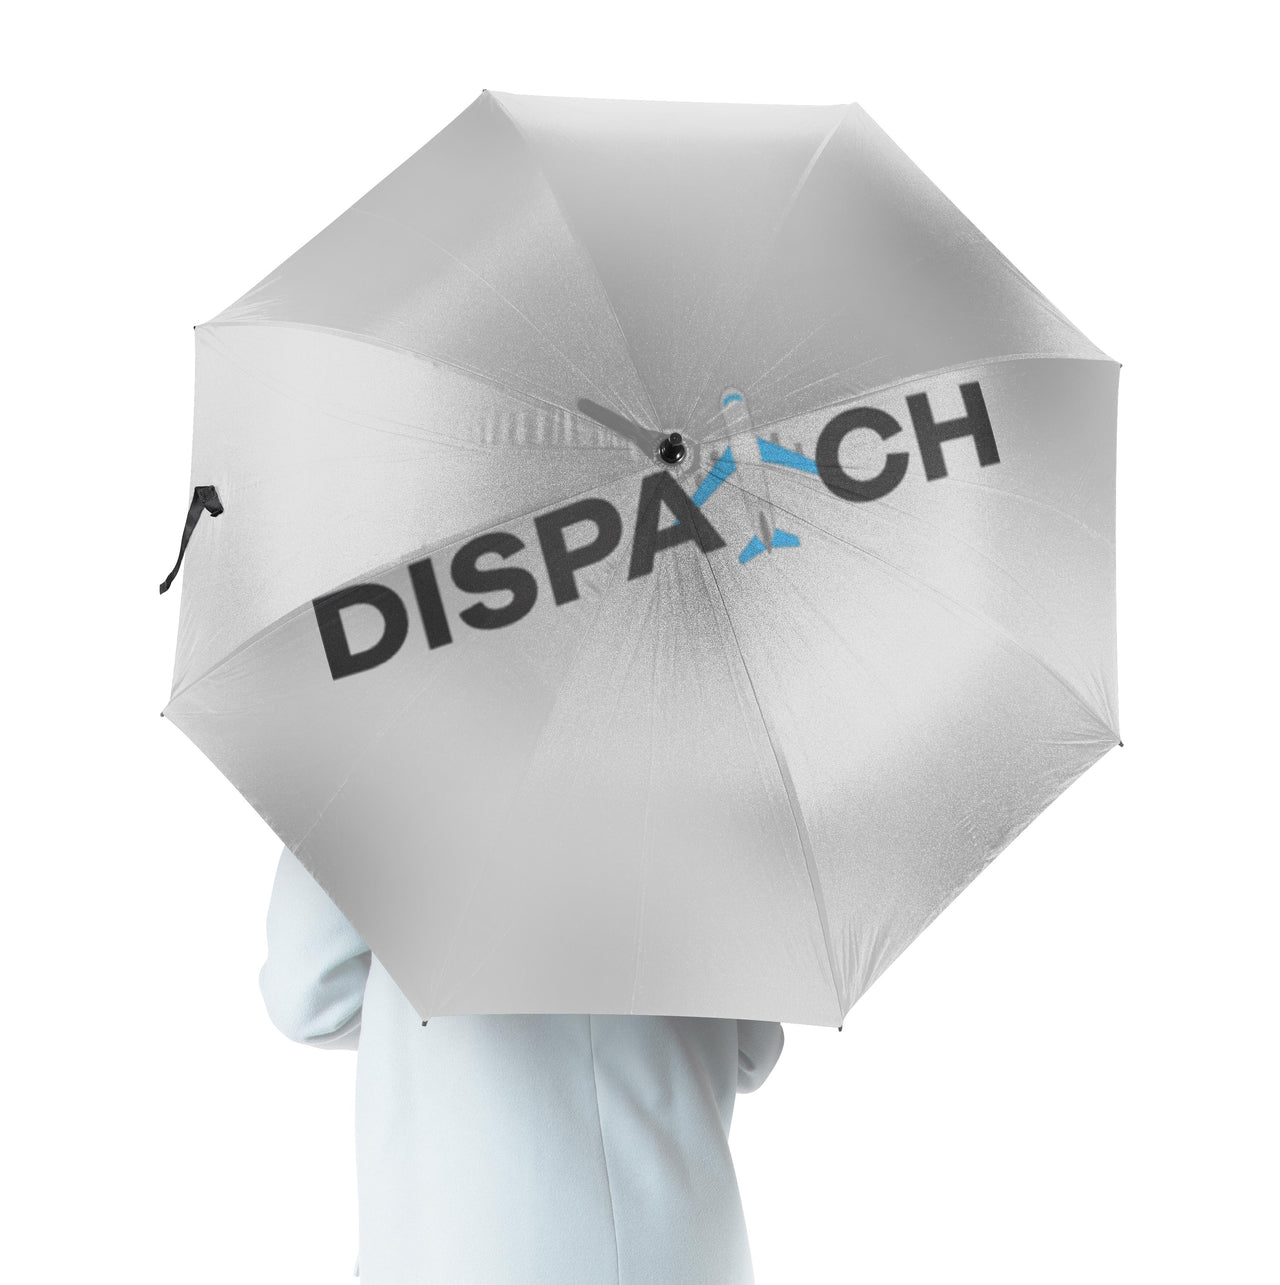 Dispatch Designed Umbrella